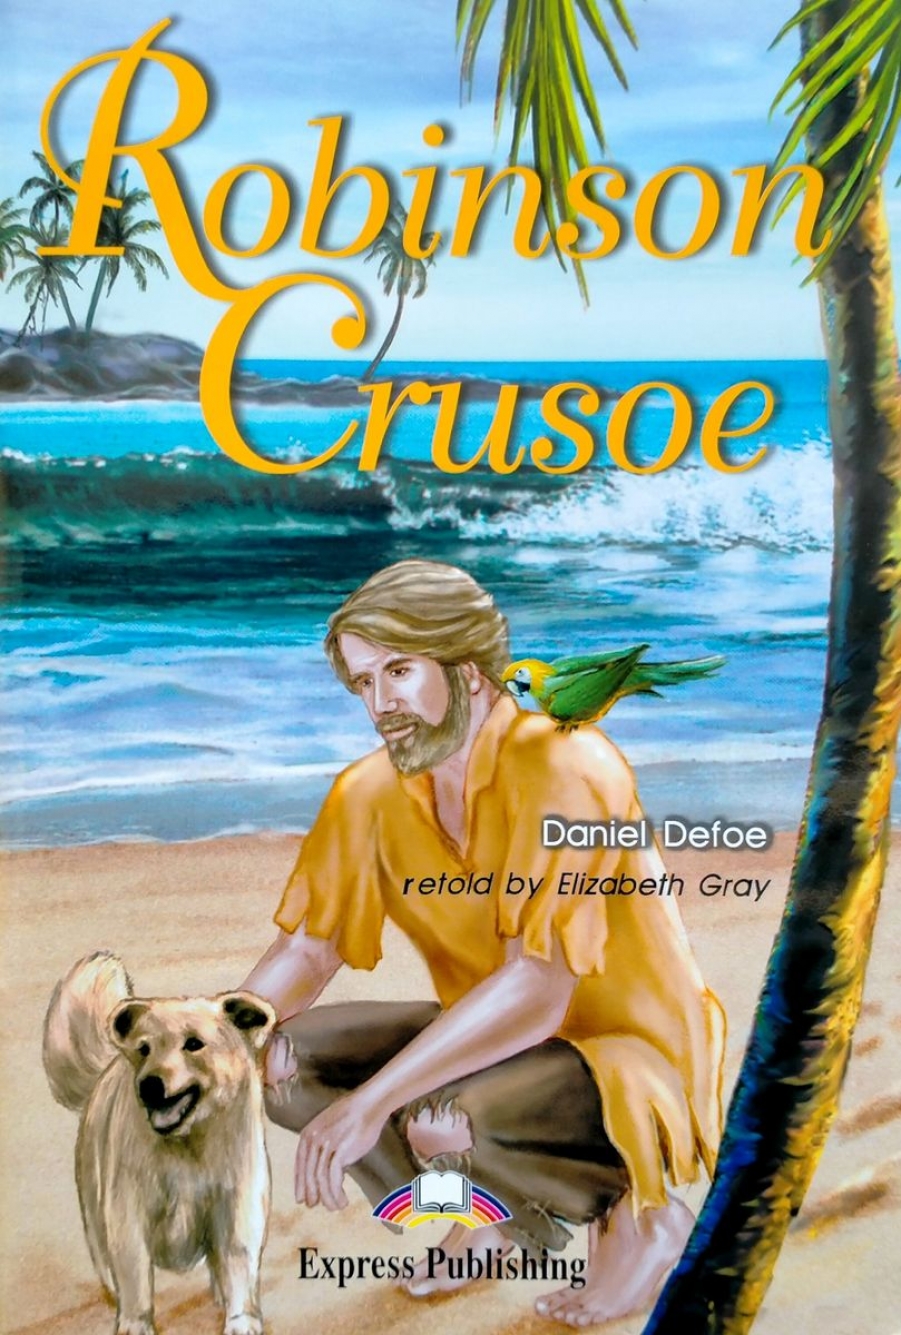 Daniel Defoe retold by Elizabeth Gray Robinson Crusoe. Graded Readers. Level 2 